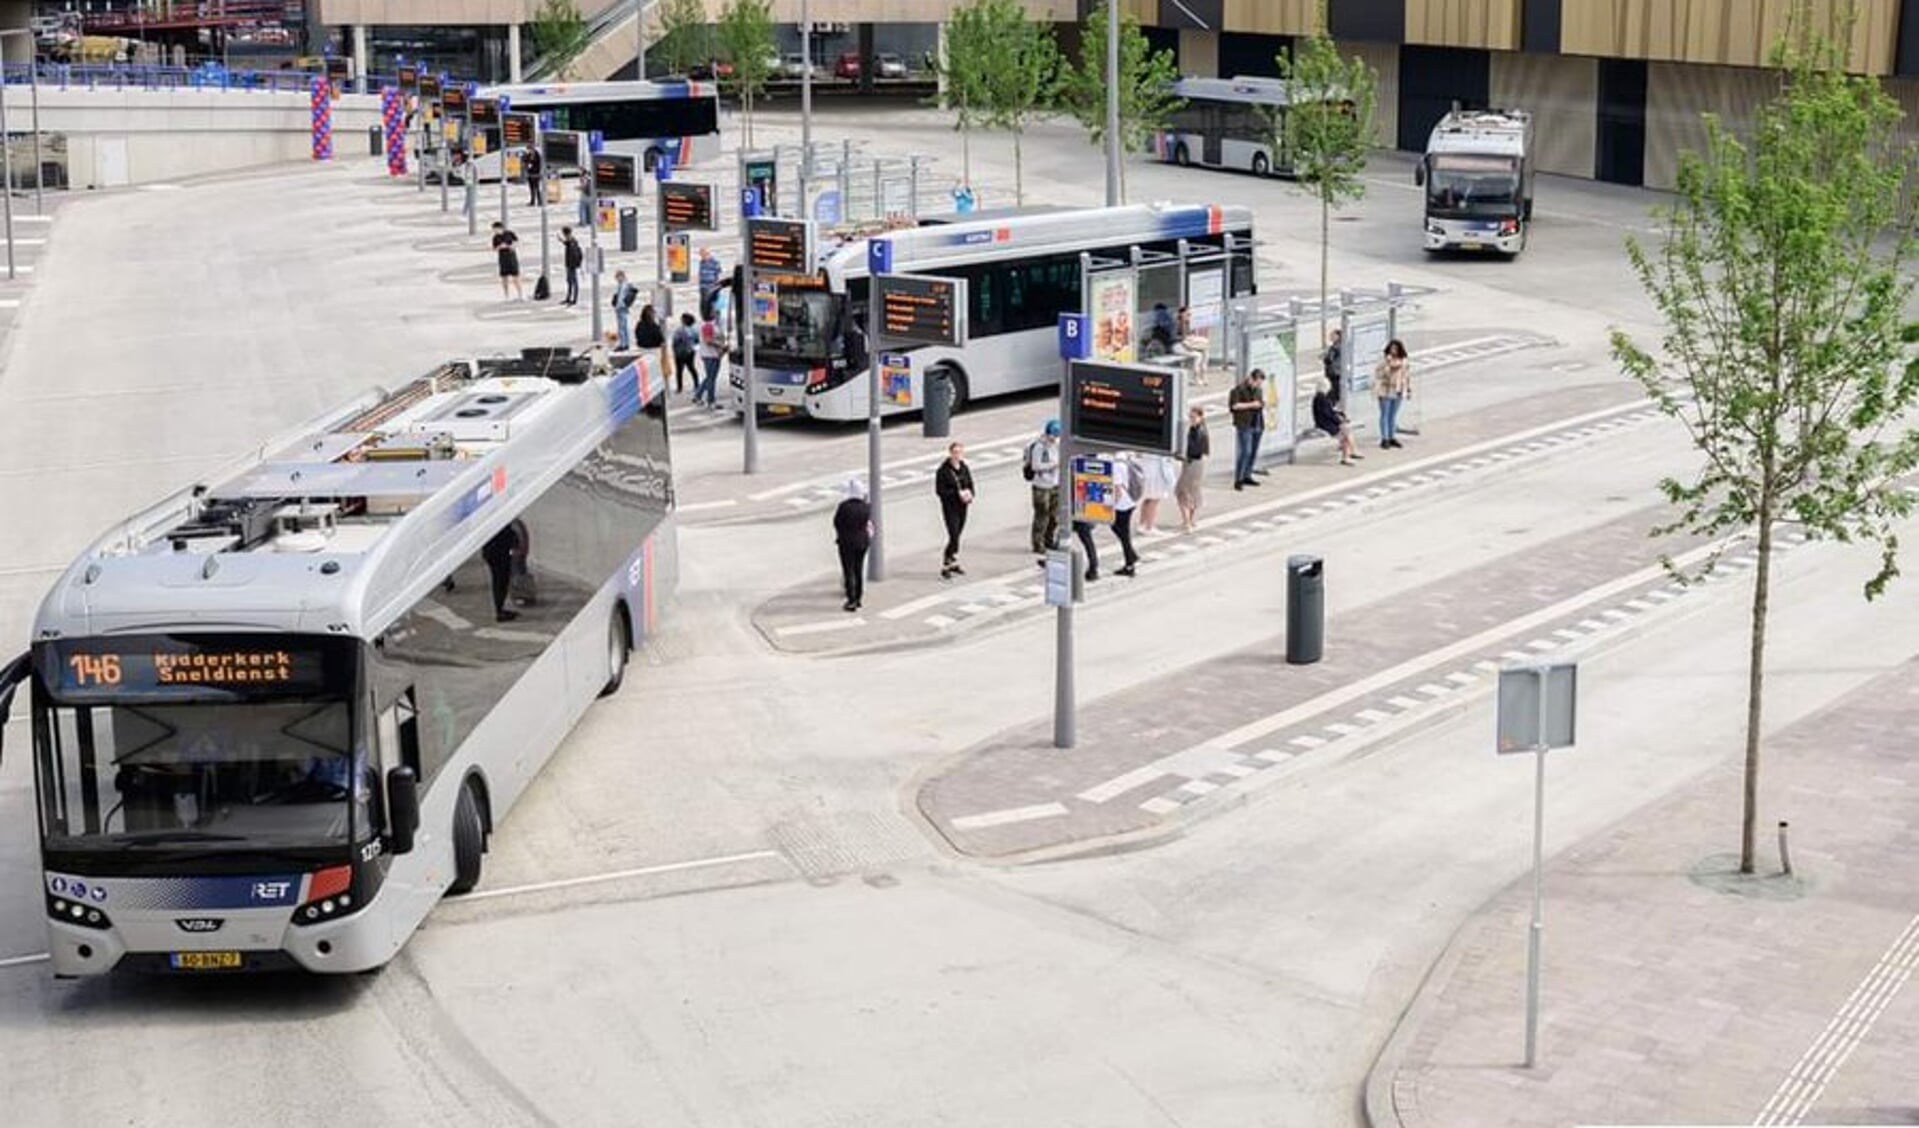 Onvoorziene omstandigheden Kwade trouw Verrassend genoeg Bussen RET beginnen eerder aan vakantiedienstregeling vanwege ziek  personeel - Adverteren Rotterdam | De Havenloods | Krant en Online